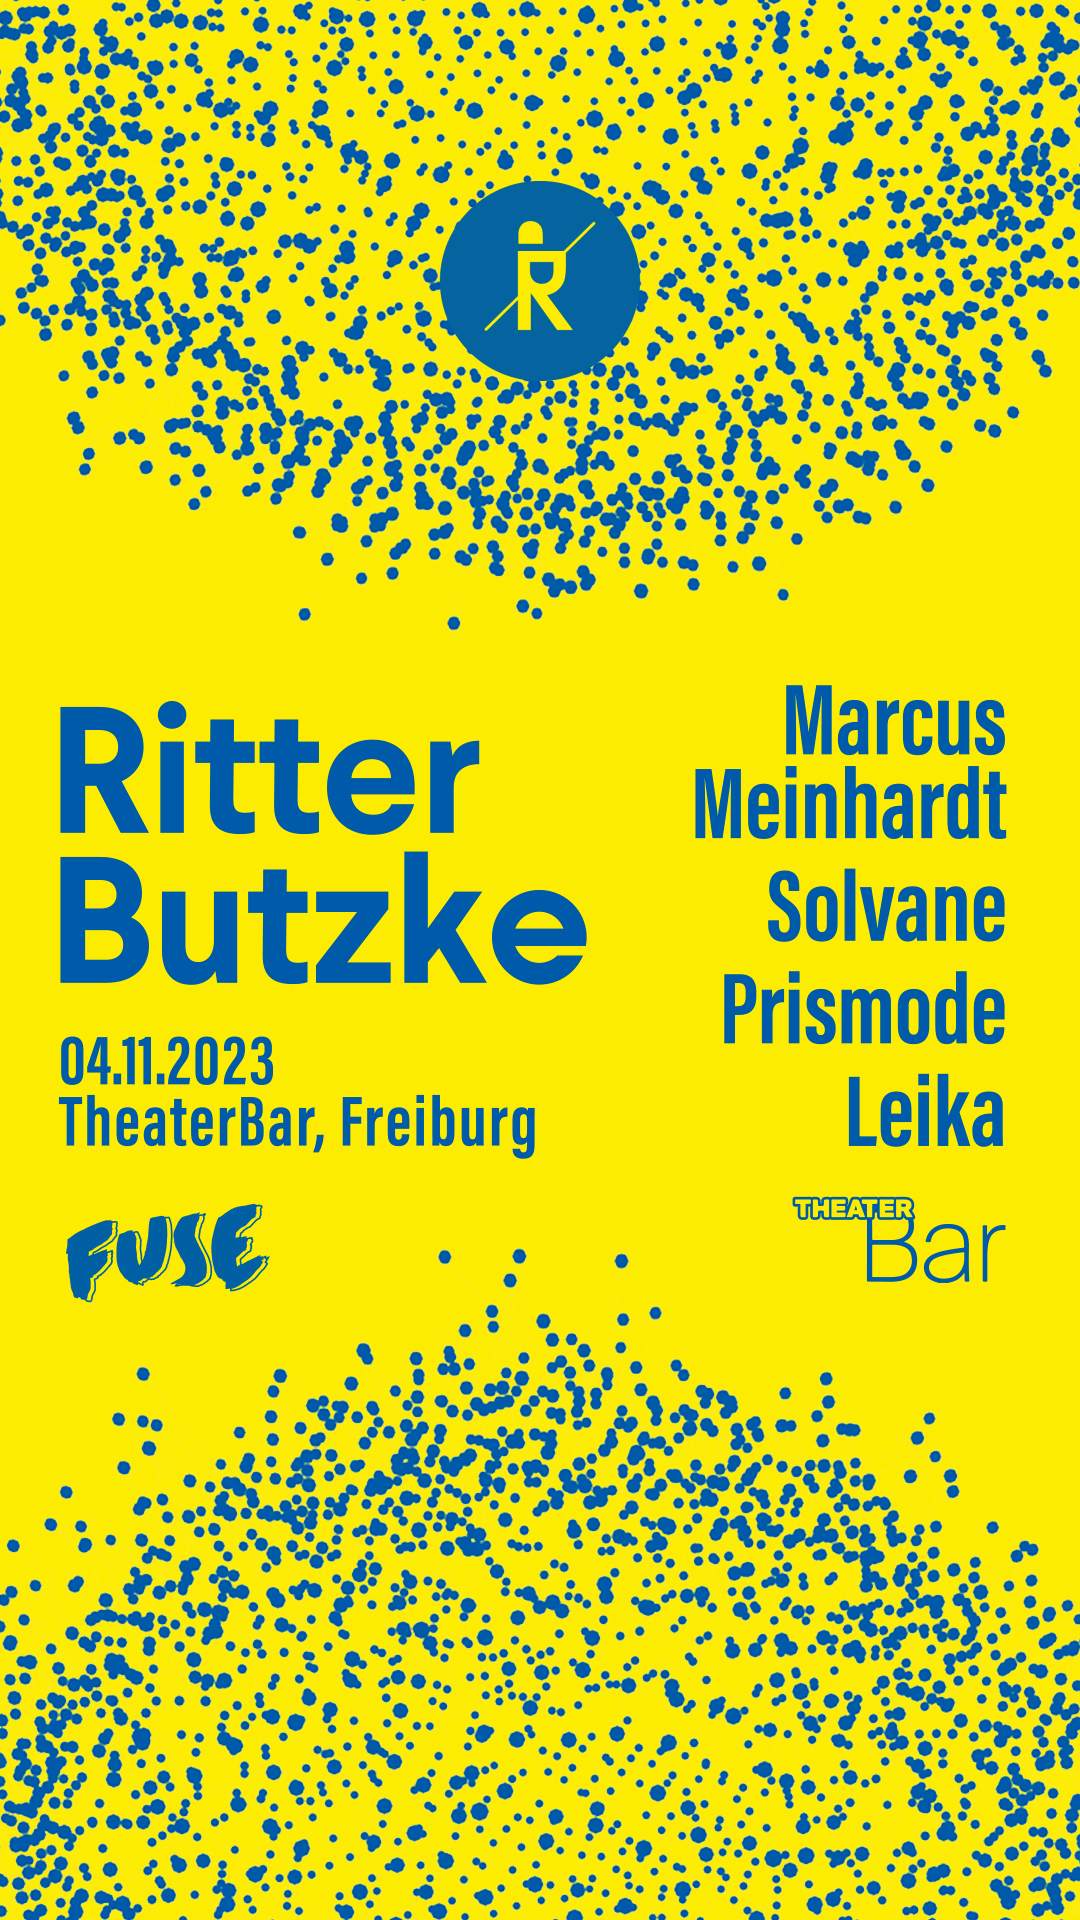 Ritter Butzke in Freiburg - Página trasera